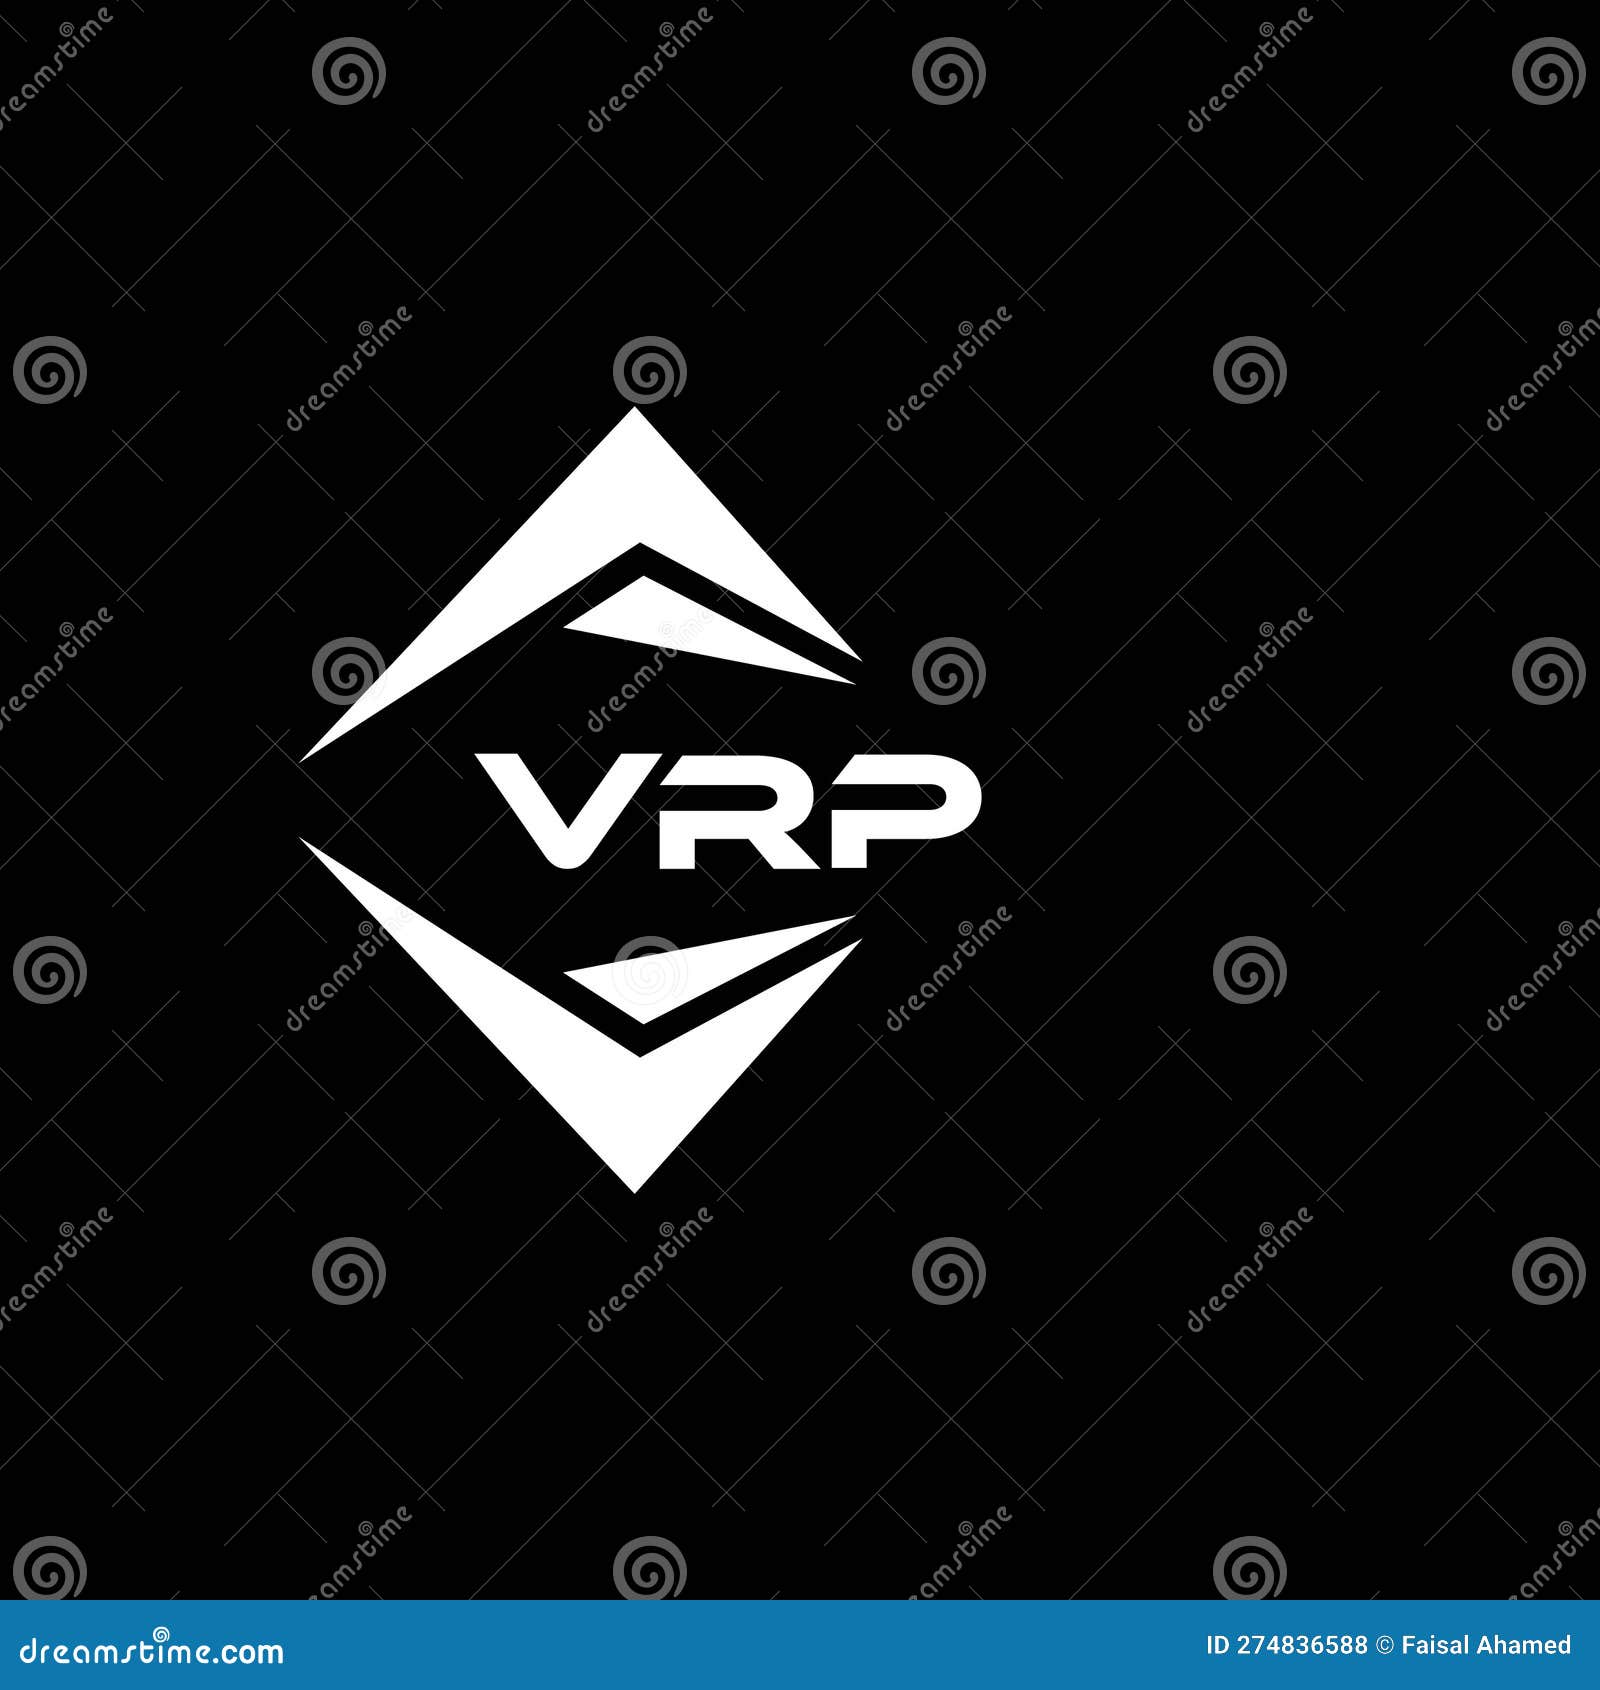 Vrp Stock Illustrations – 14 Vrp Stock Illustrations, Vectors & Clipart -  Dreamstime